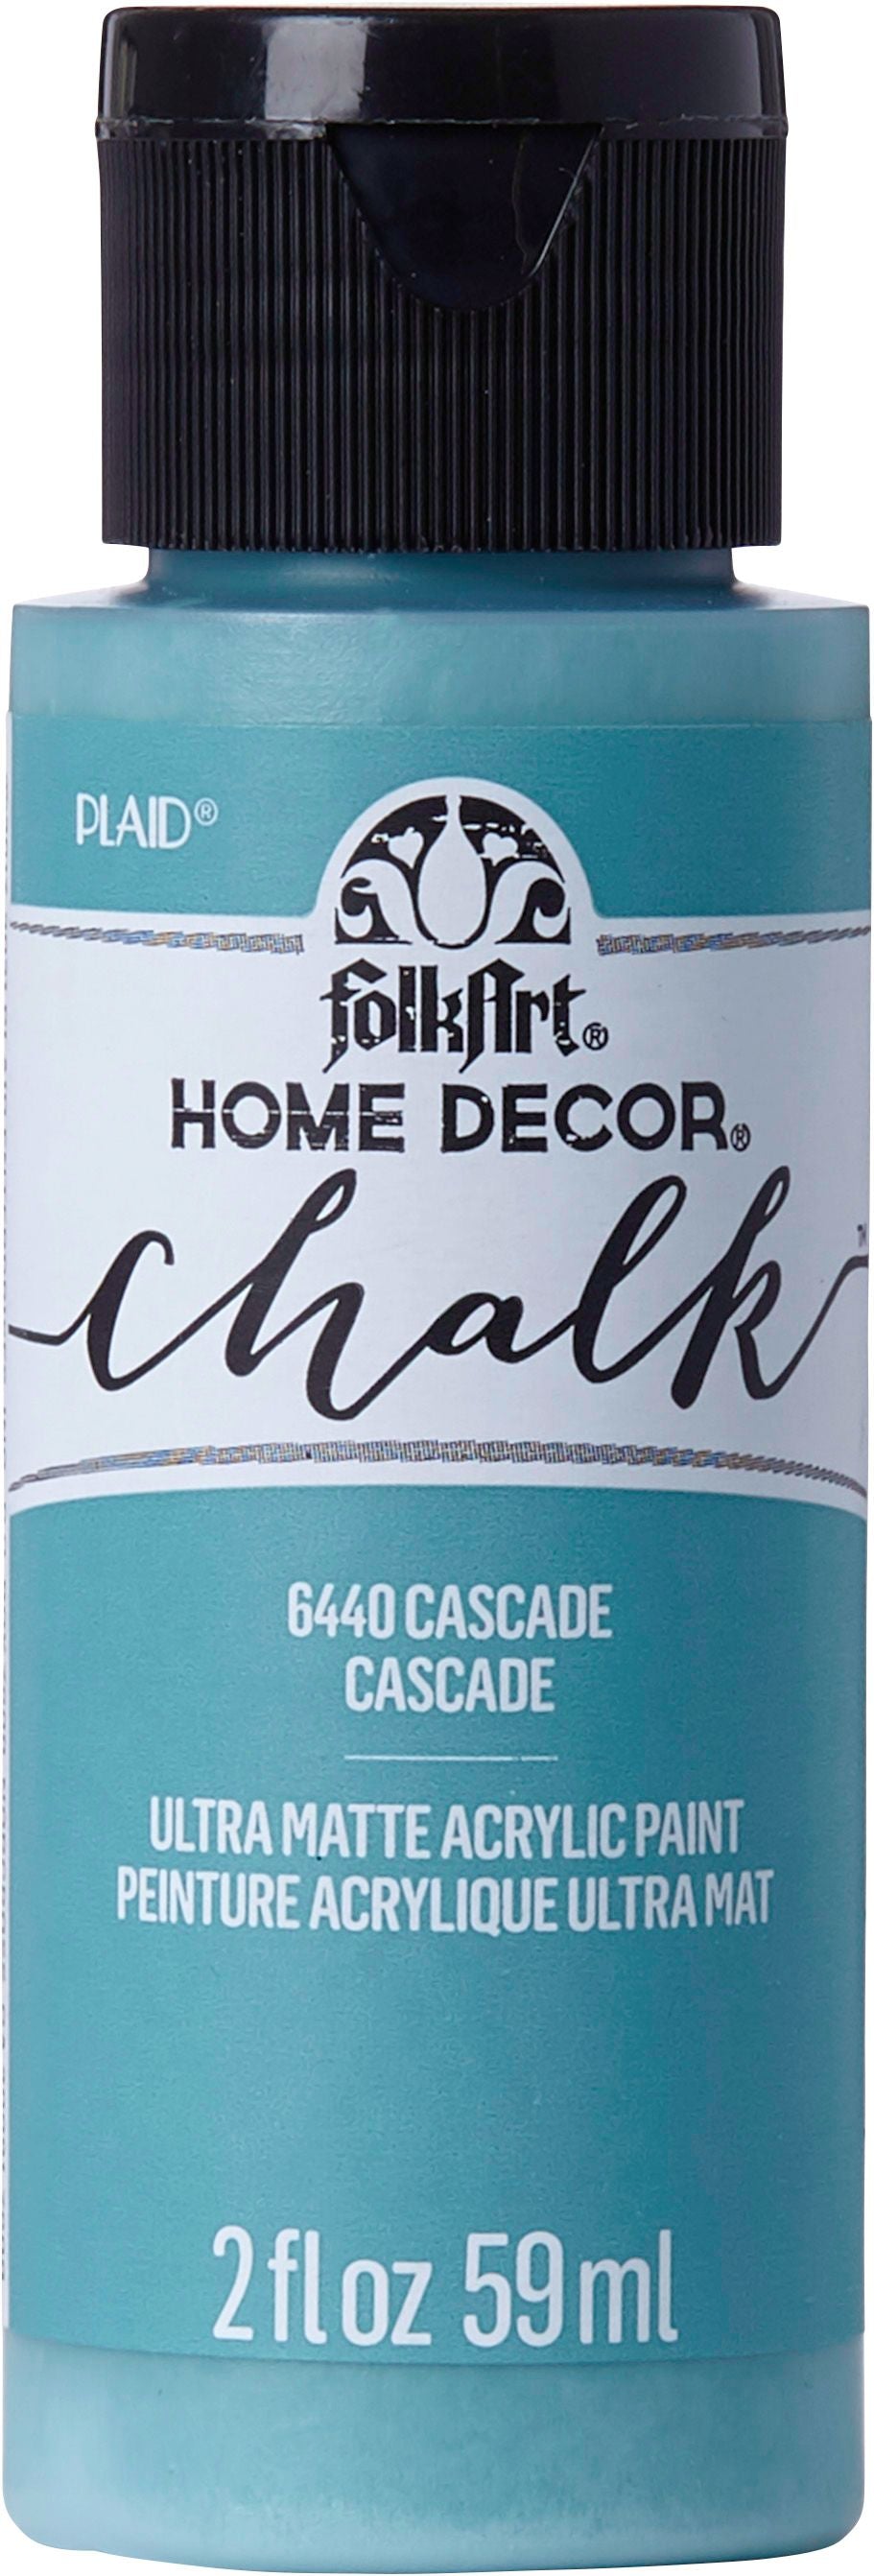 FolkArt Home Decor Chalk Paint 2oz White Adirondack